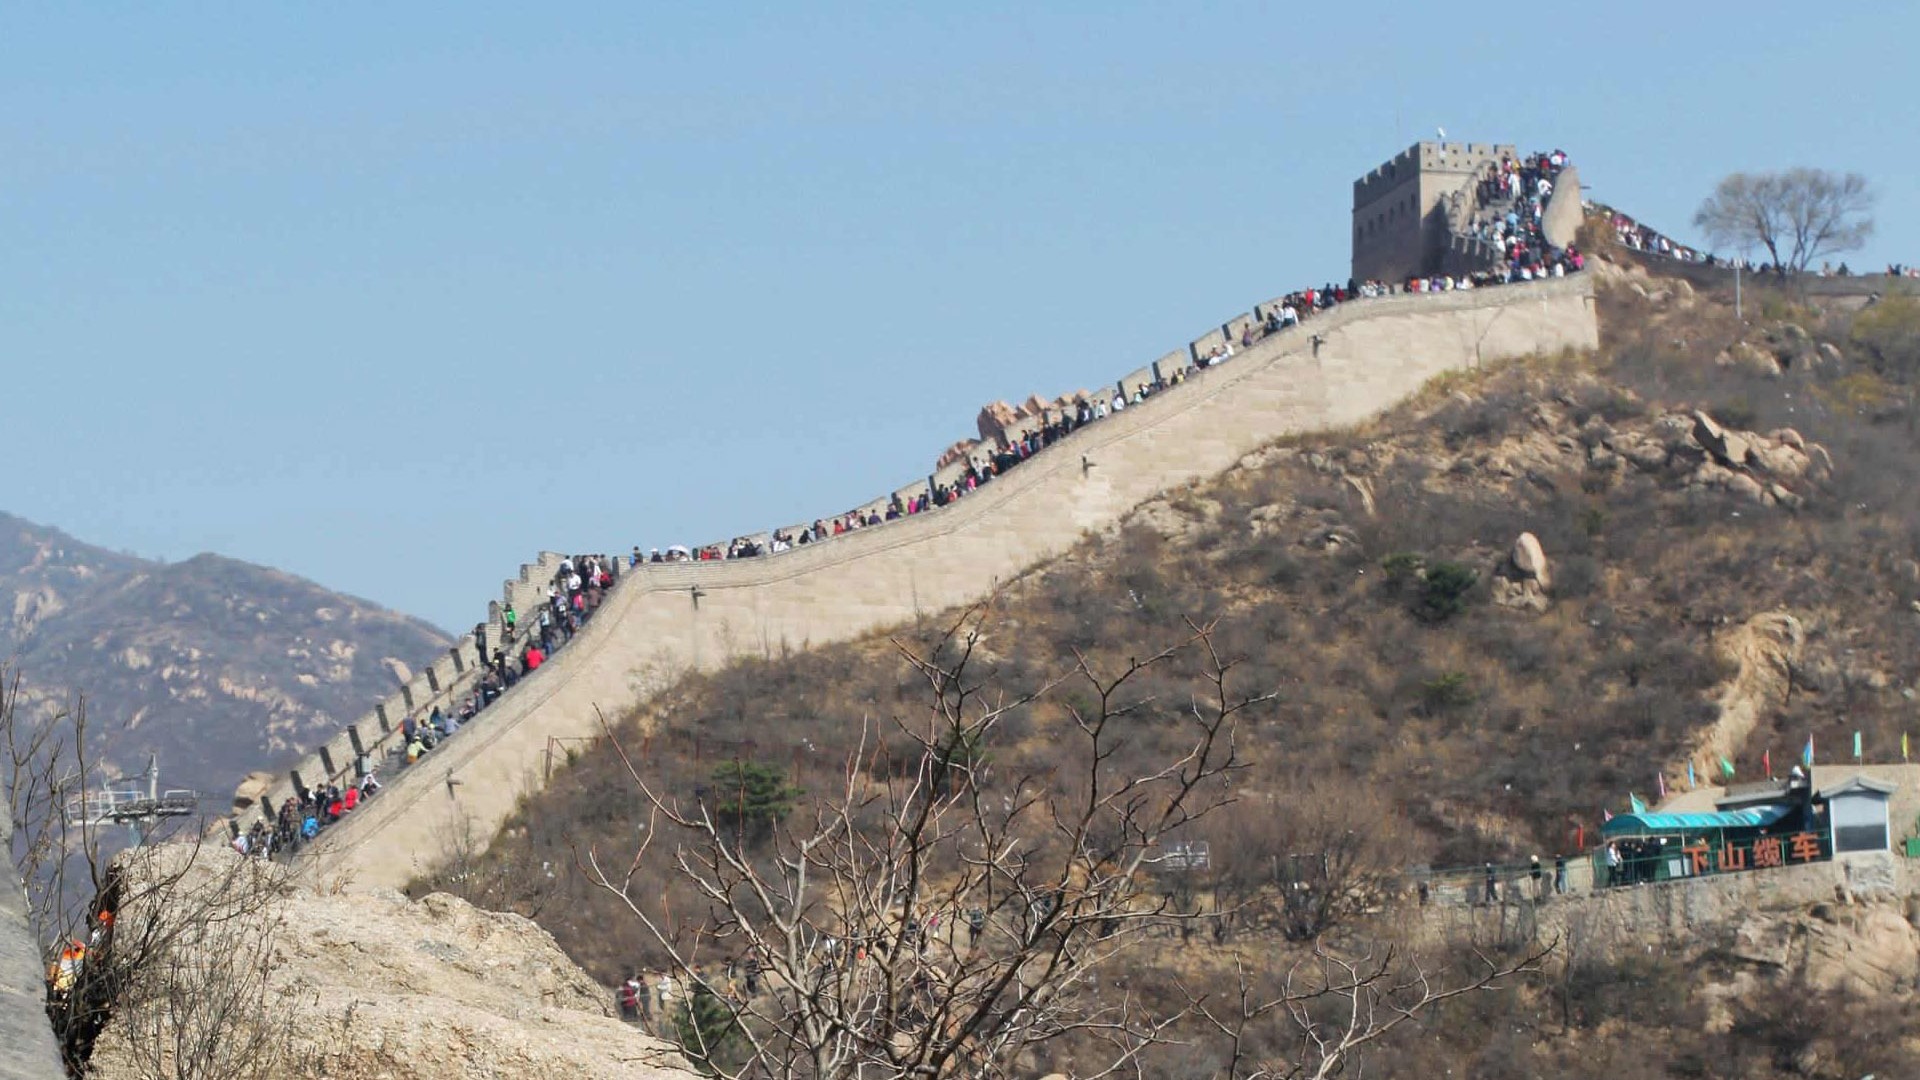 Beijing Tour - Badaling Great Wall (ggc works) #12 - 1920x1080